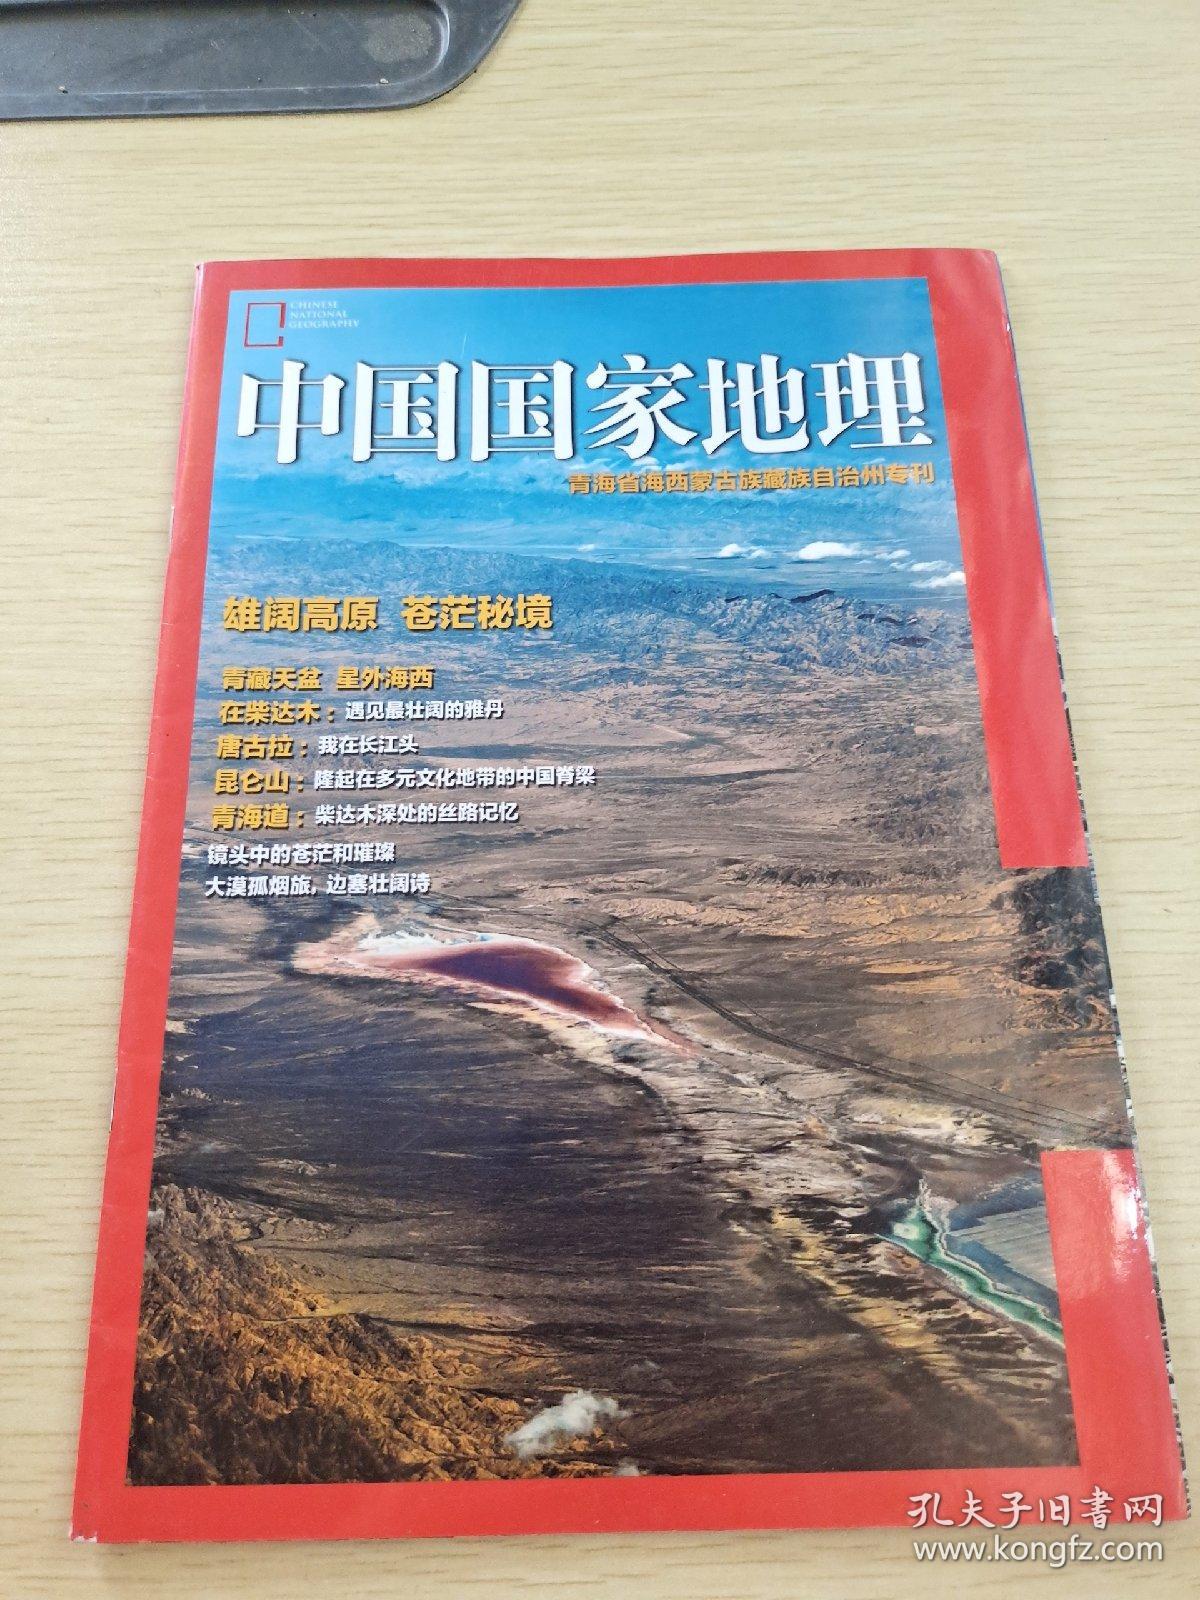 中国国家地理 青海省海西蒙古族藏族自治州专刊